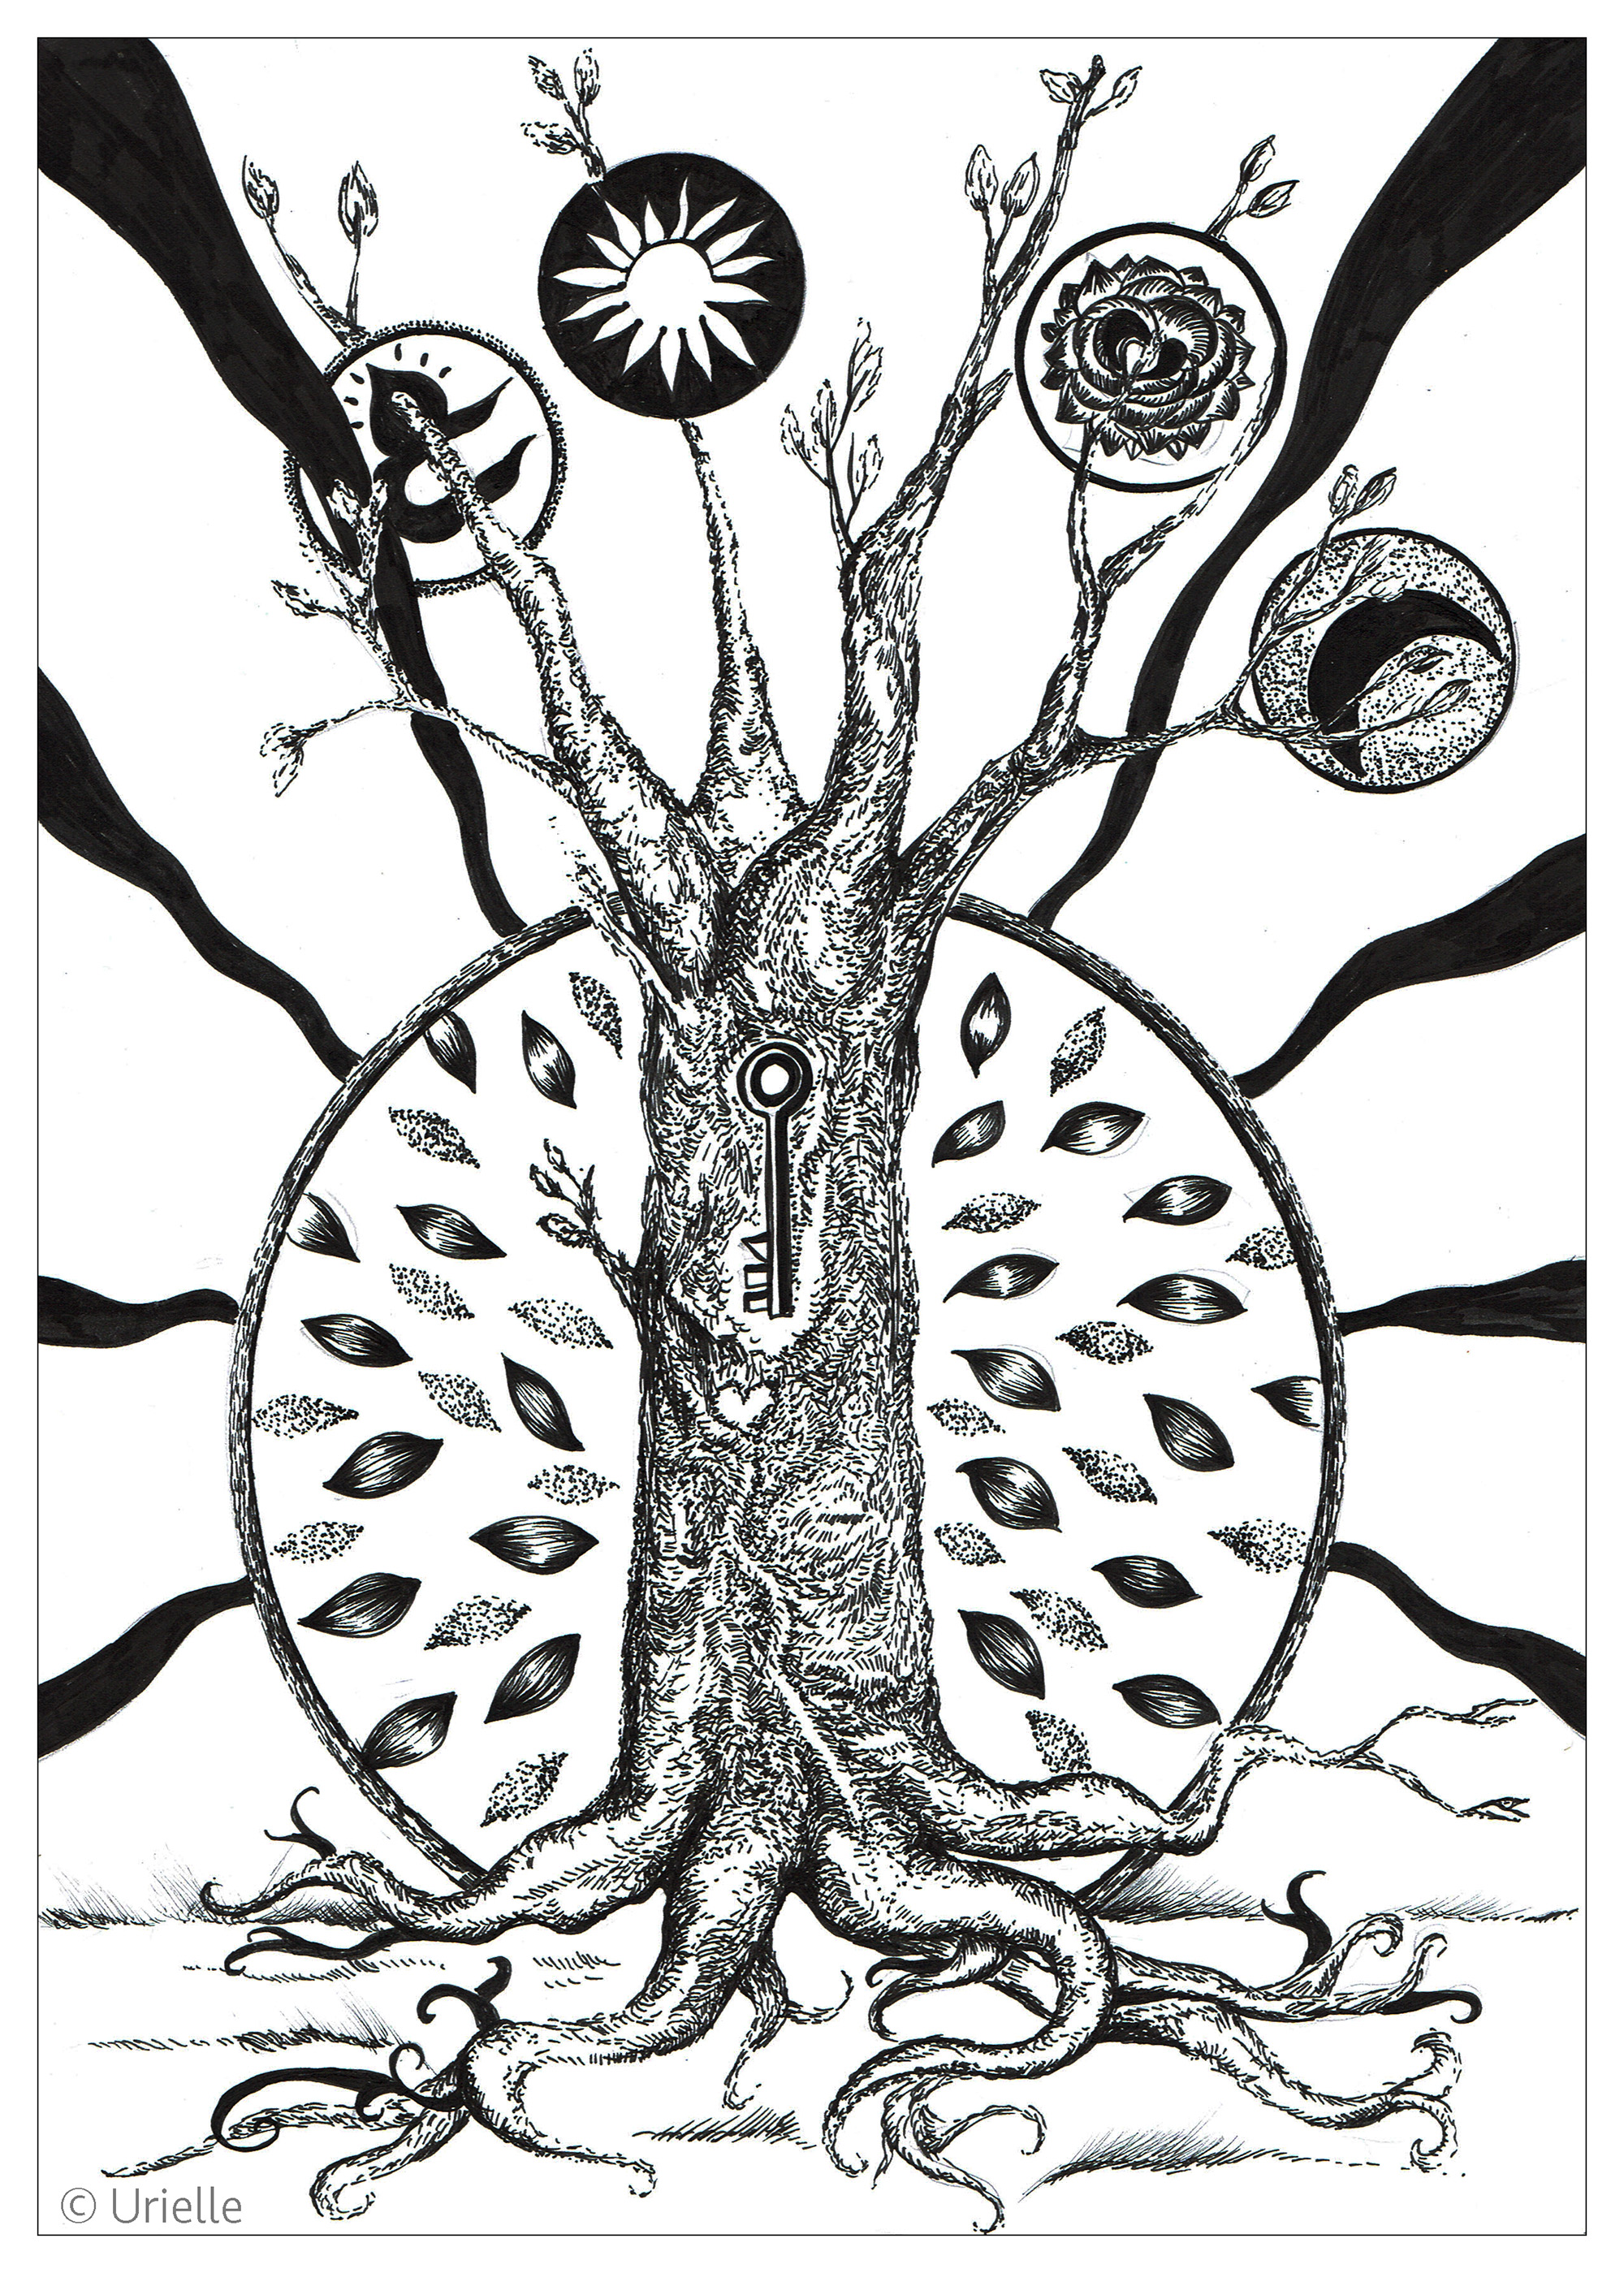 La llave del árbol. Coloración mística e inspiradora, Artista : Urielle